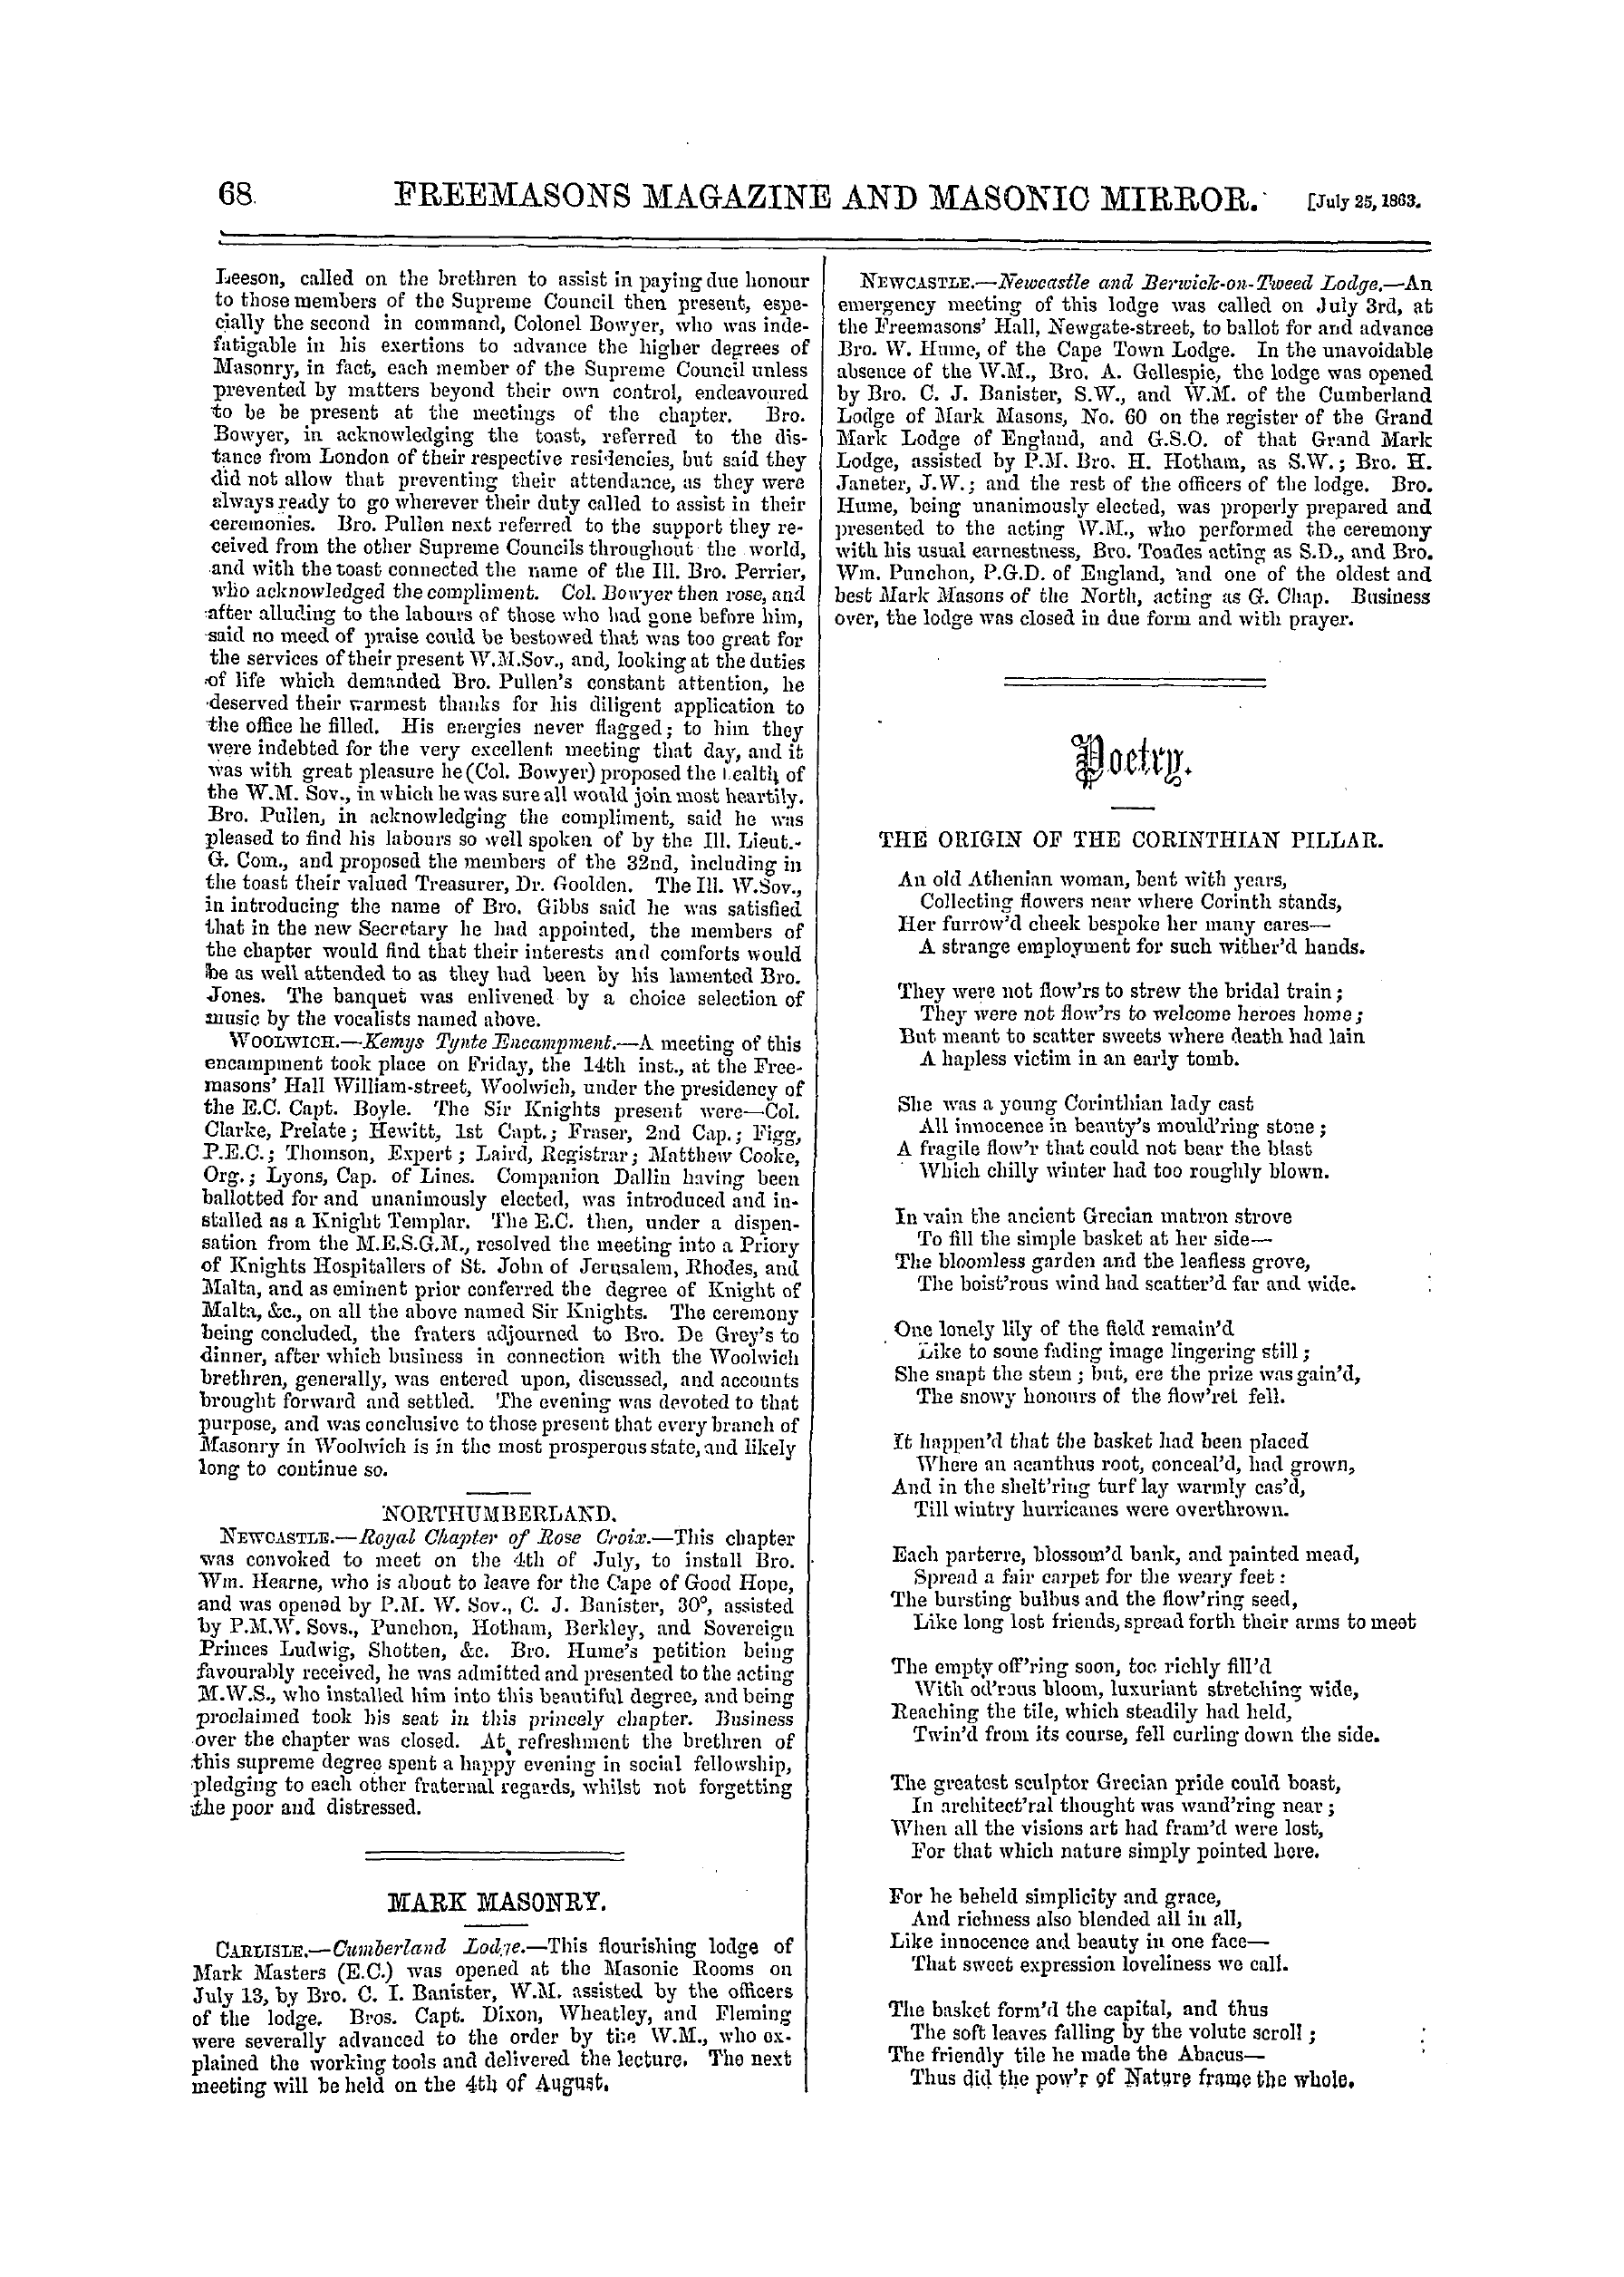 The Freemasons' Monthly Magazine: 1863-07-25 - Poetry.